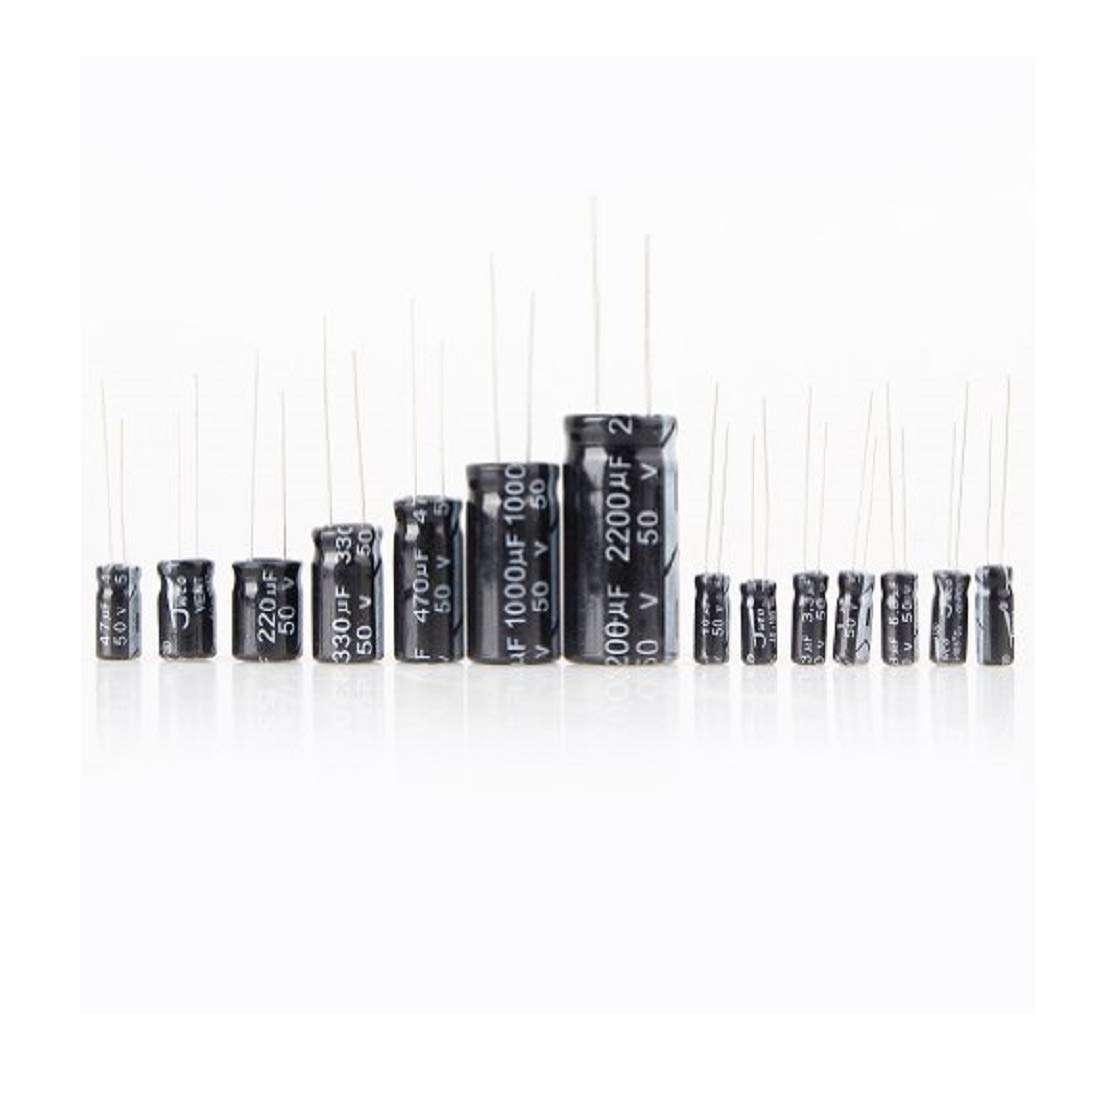 120pcs Electrolytic Capacitor Kit (12 value 1uF-470uF)